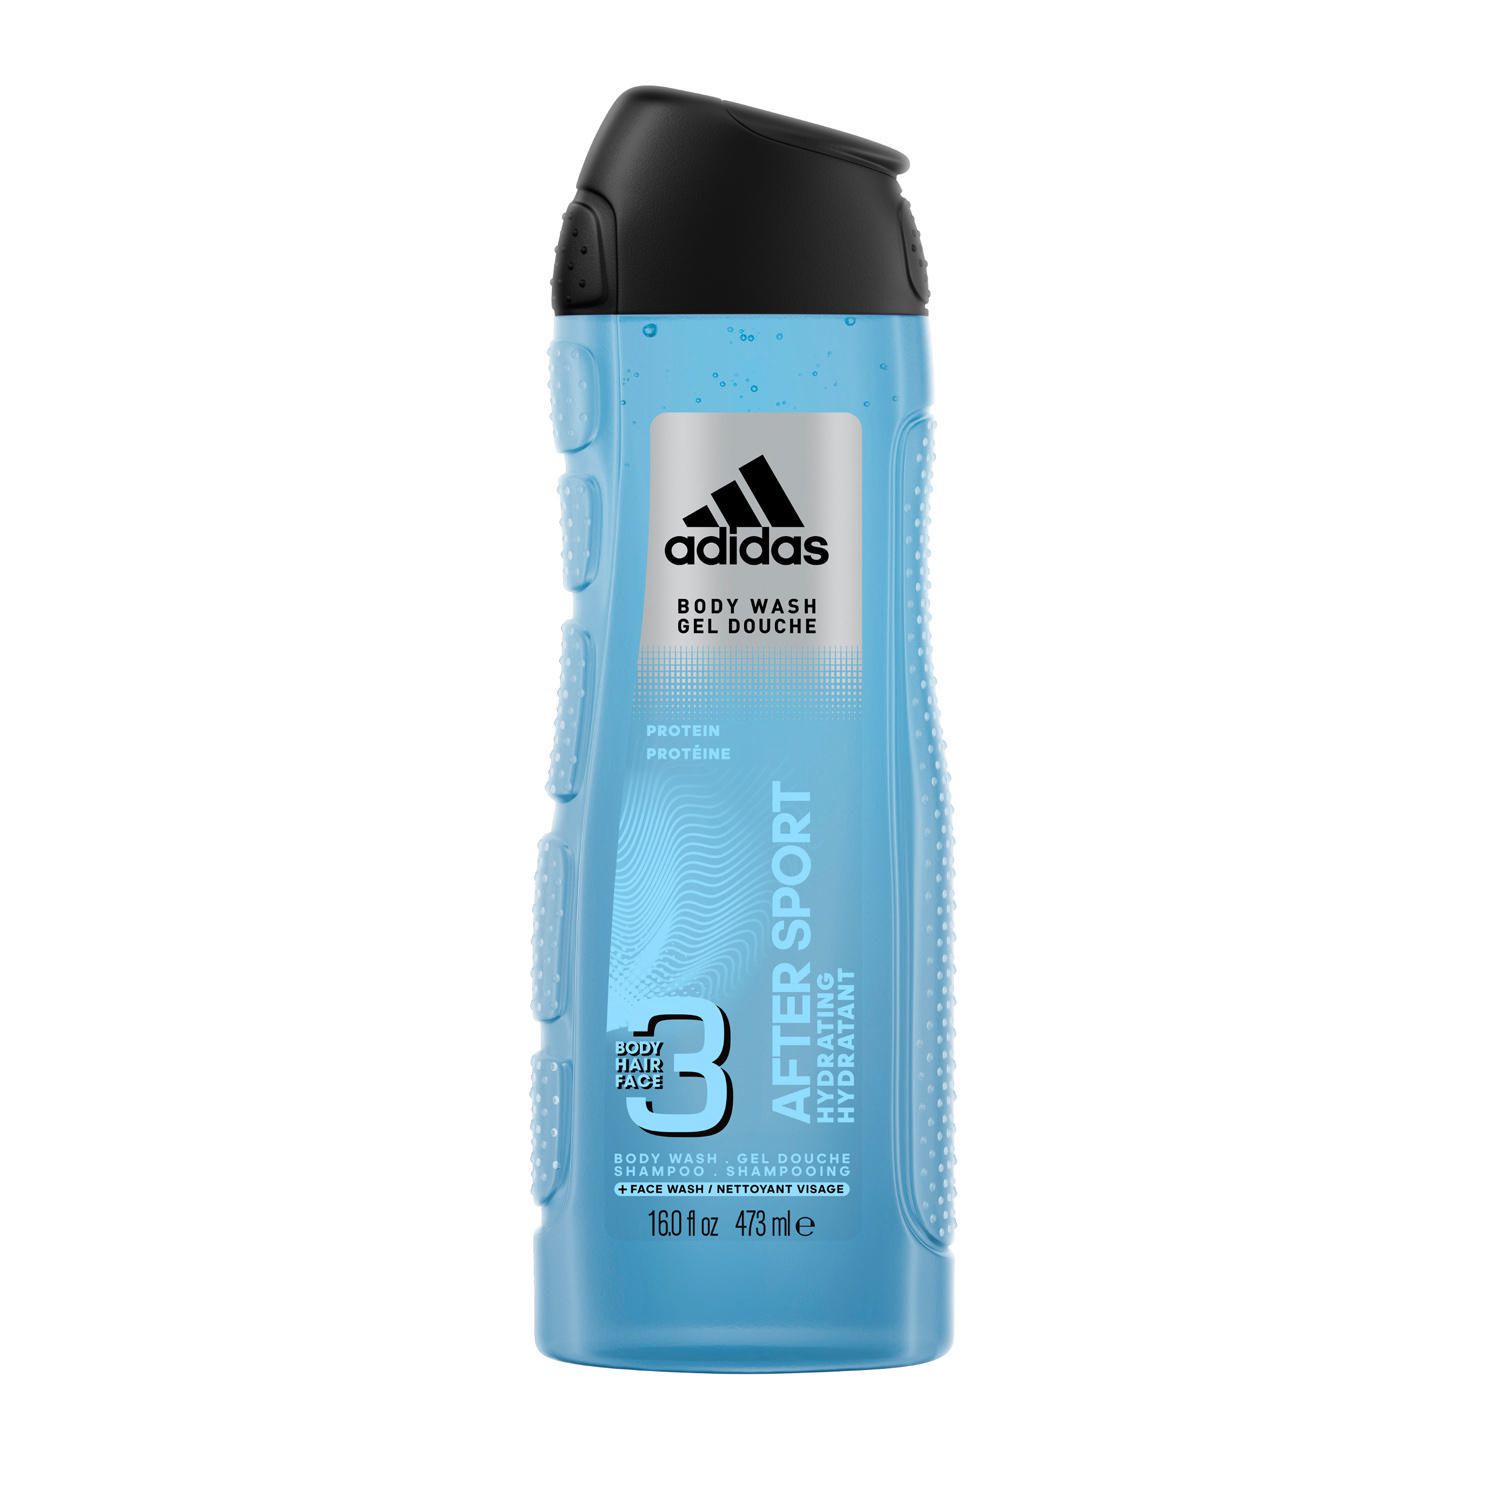 adidas hair body shower gel